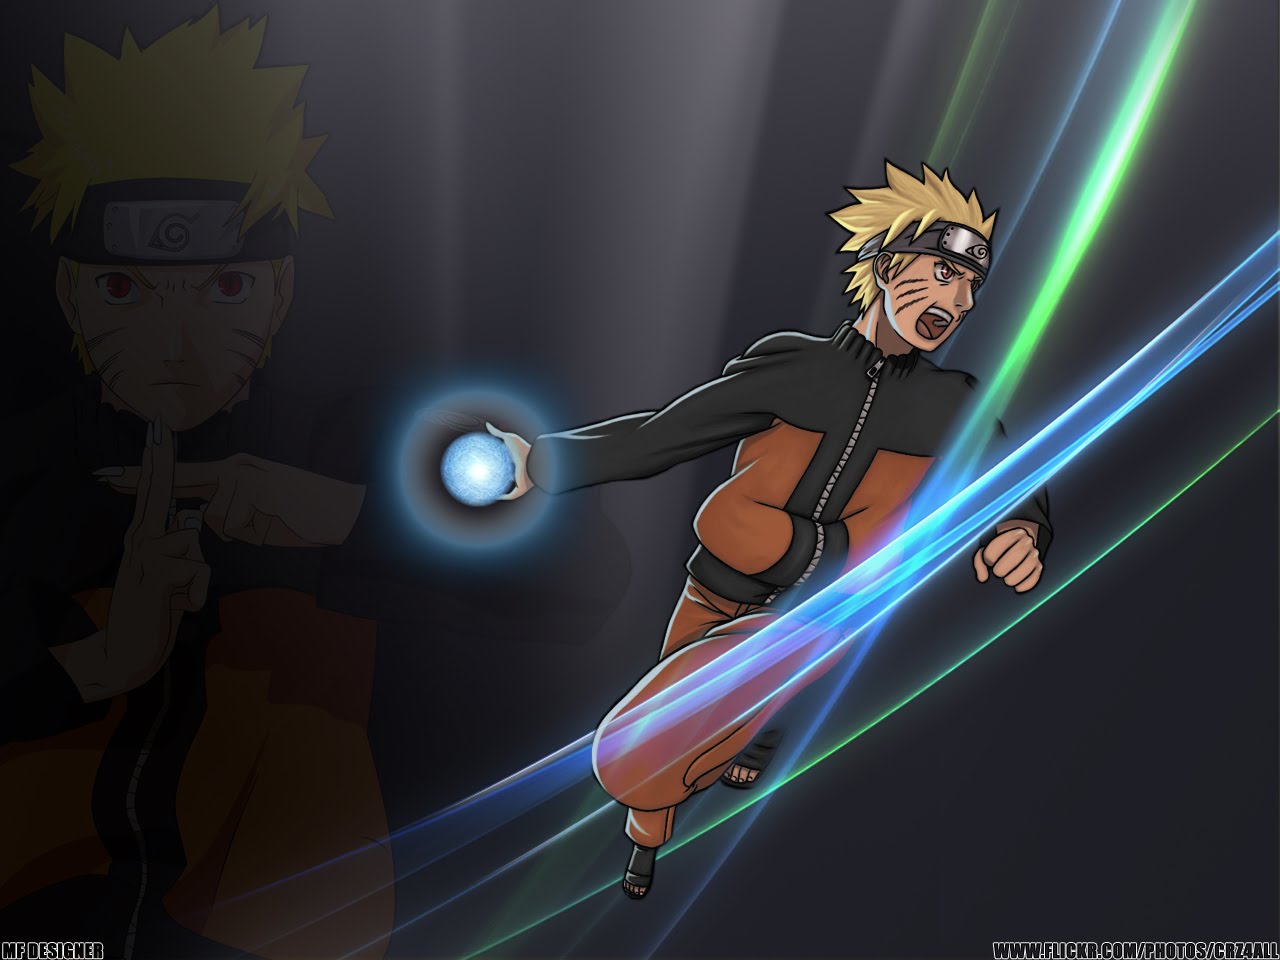 Thunder Release: Rasengan - Sự kết hợp giữa Thunder Release và Rasengan sẽ mang đến những cảnh quay mãn nhãn và kịch tính trong Naruto. Hãy xem ngay hình ảnh liên quan!